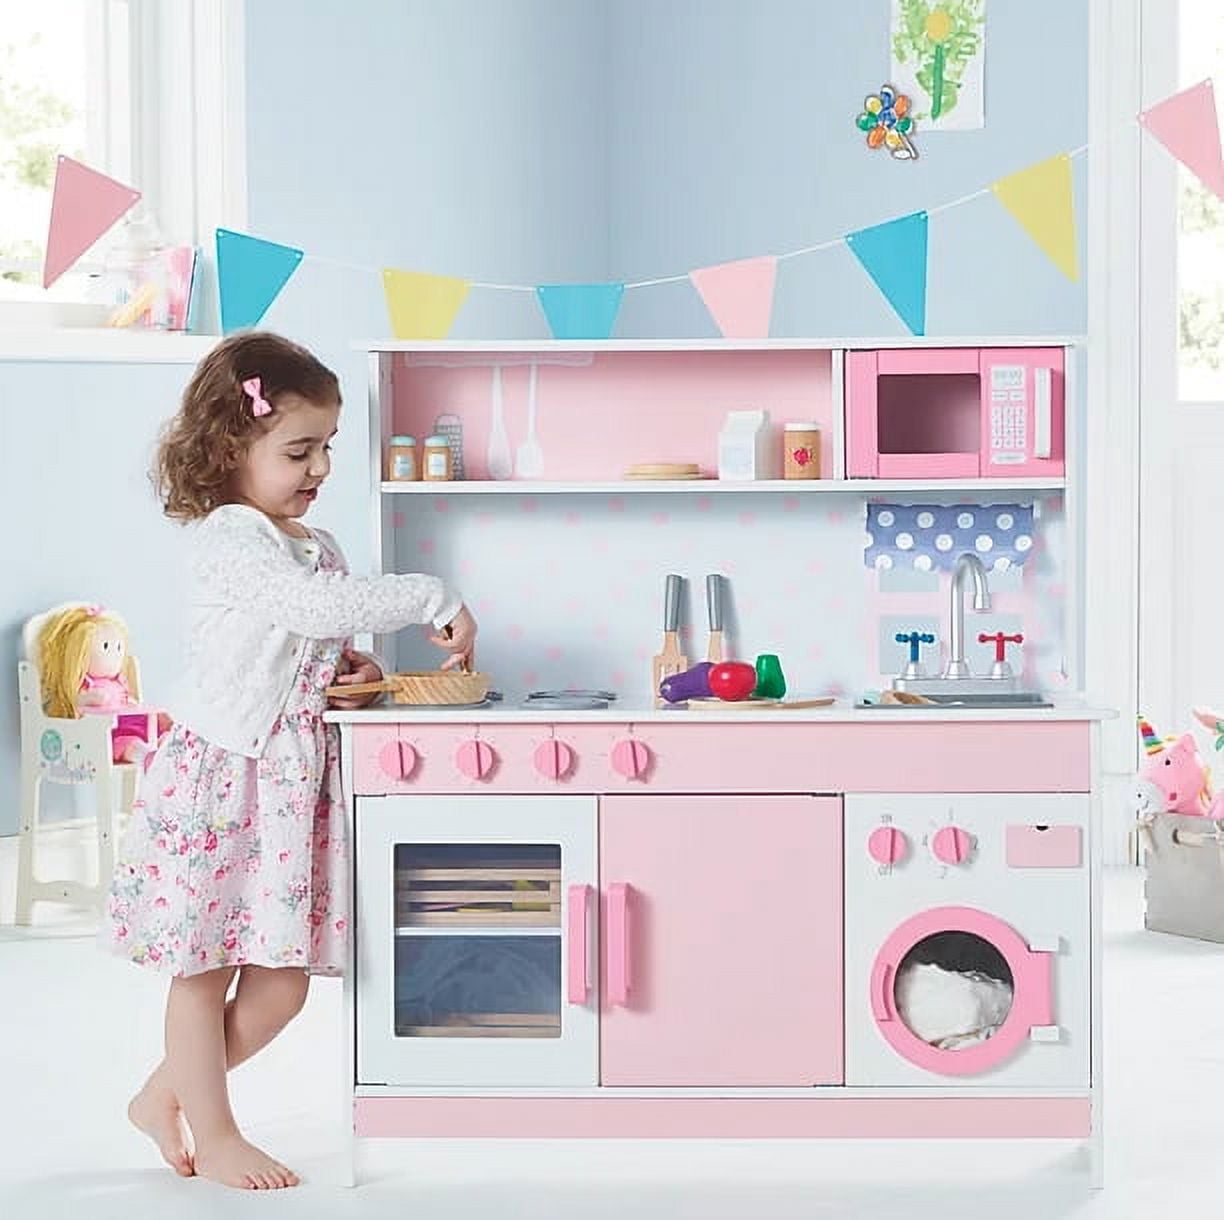 Spark Create Imagine Kitchen Appliances Play Set, 25 Pieces